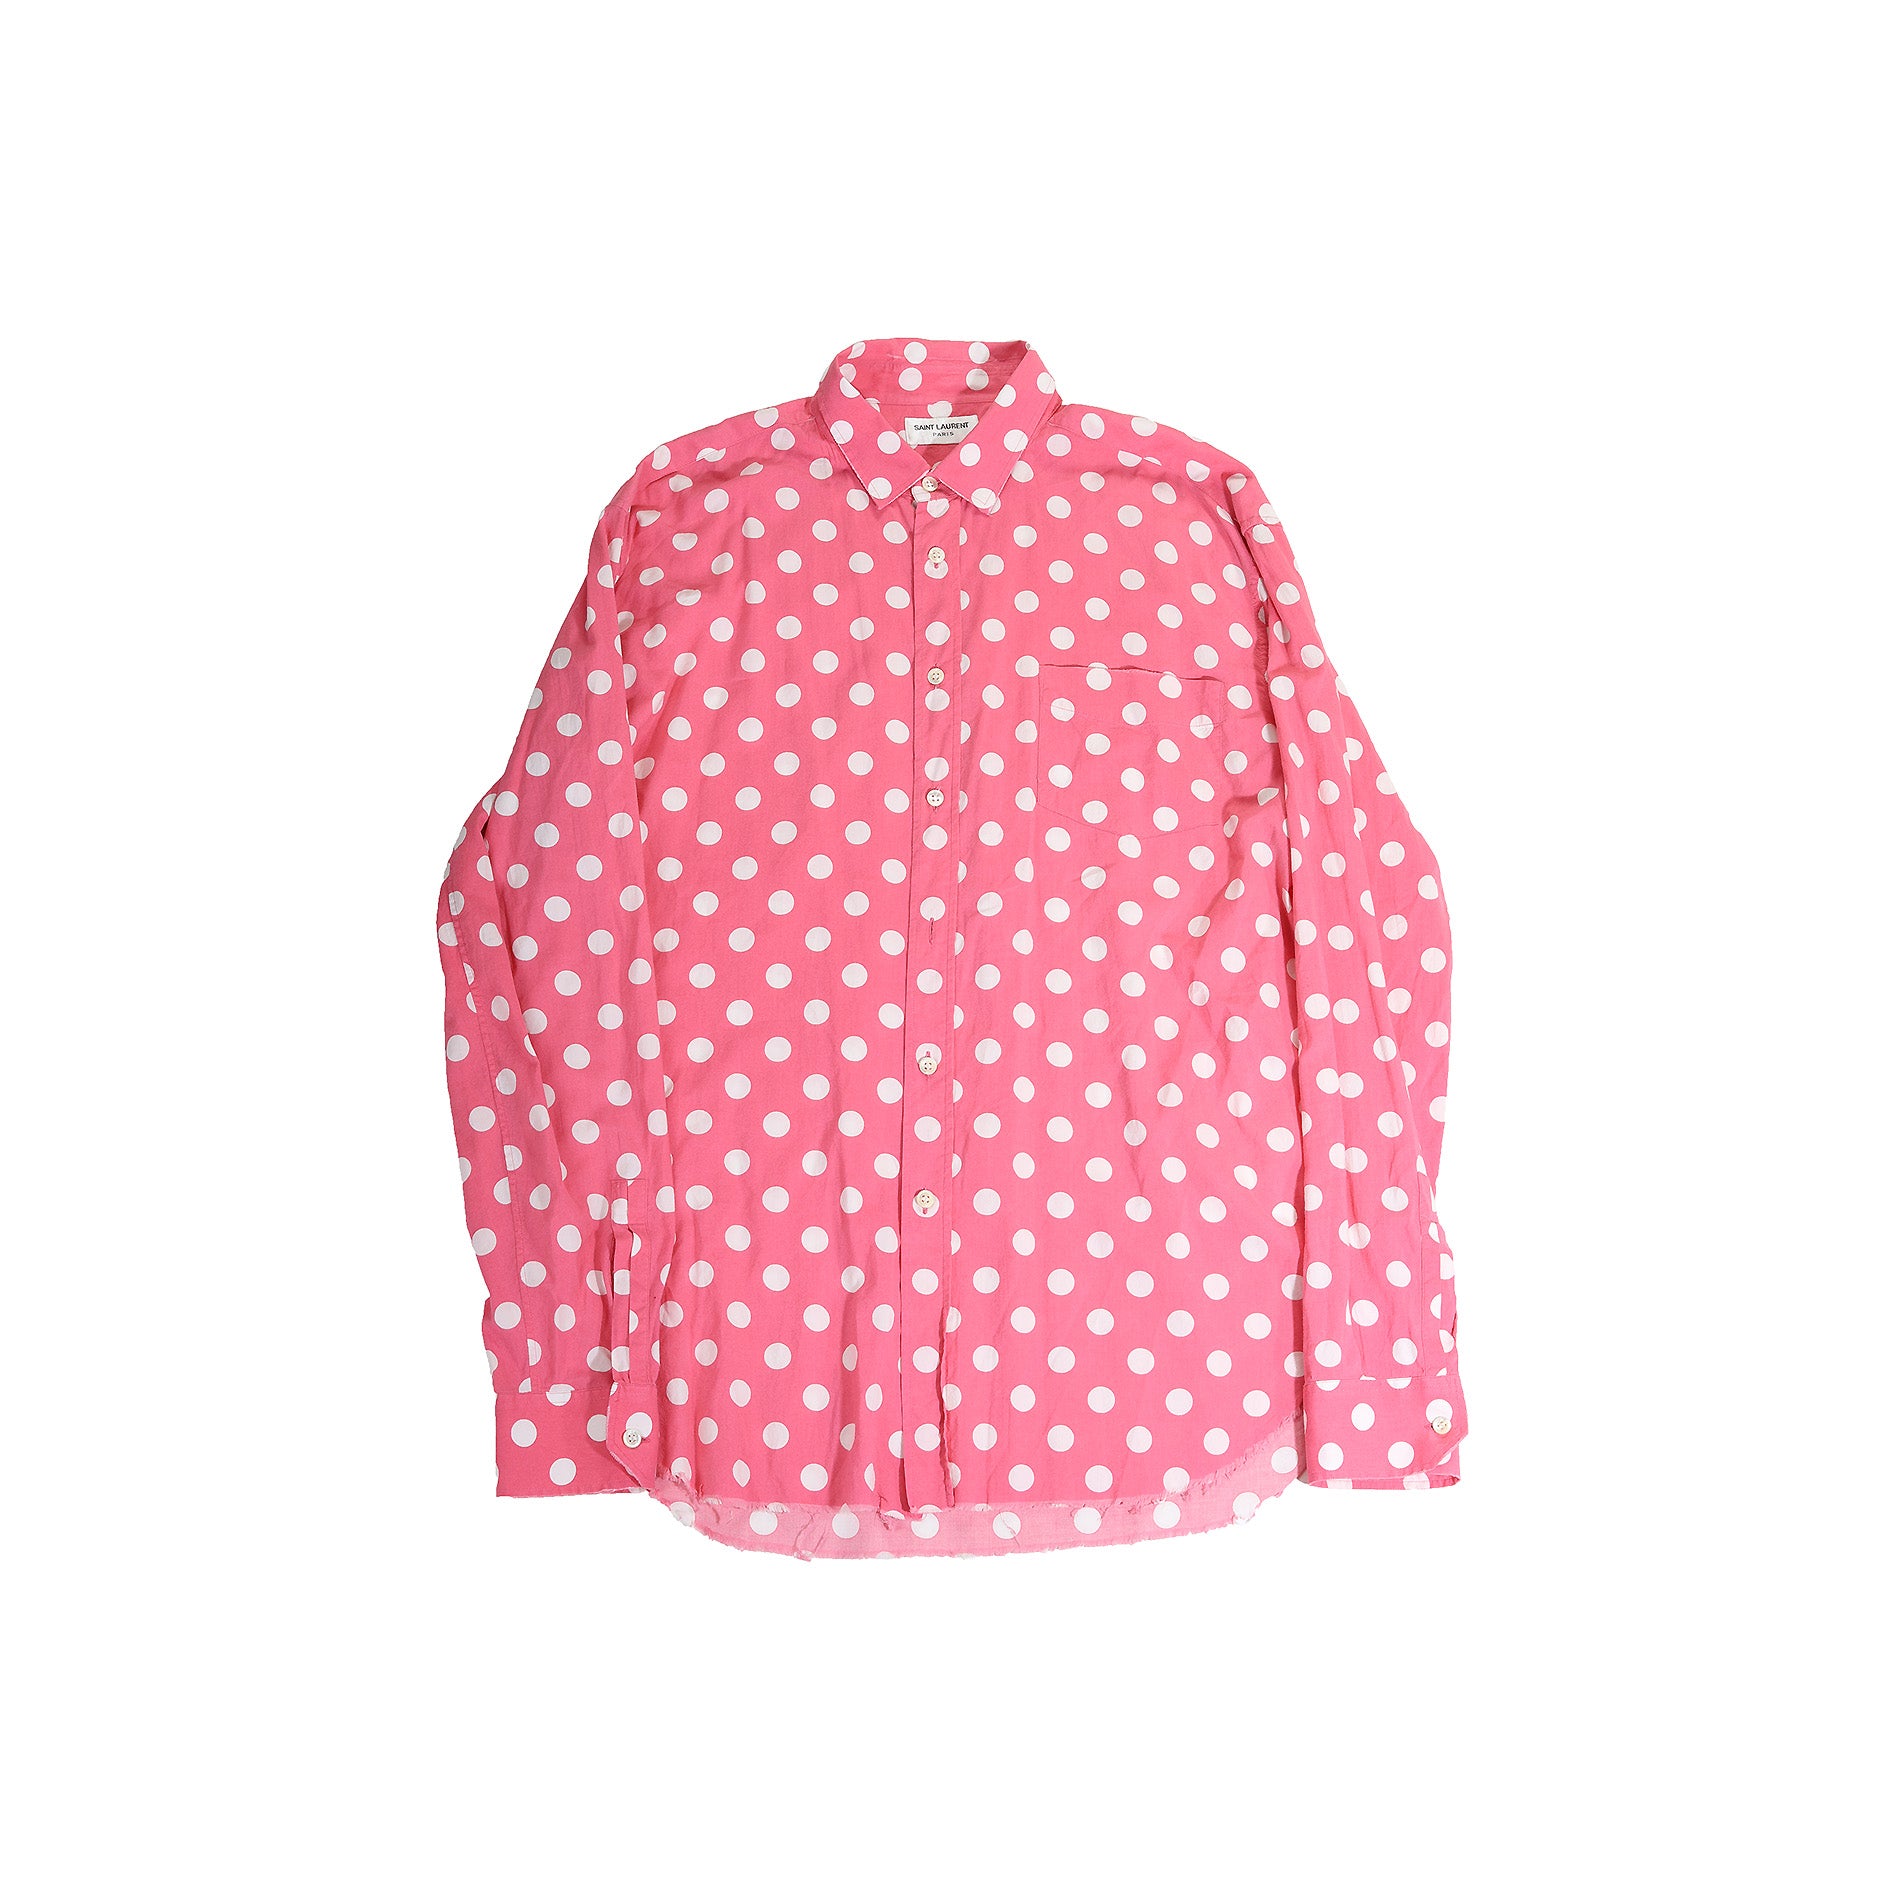 Saint Laurent Paris SS16 Pink Polka Dot Raw Hem Shirt